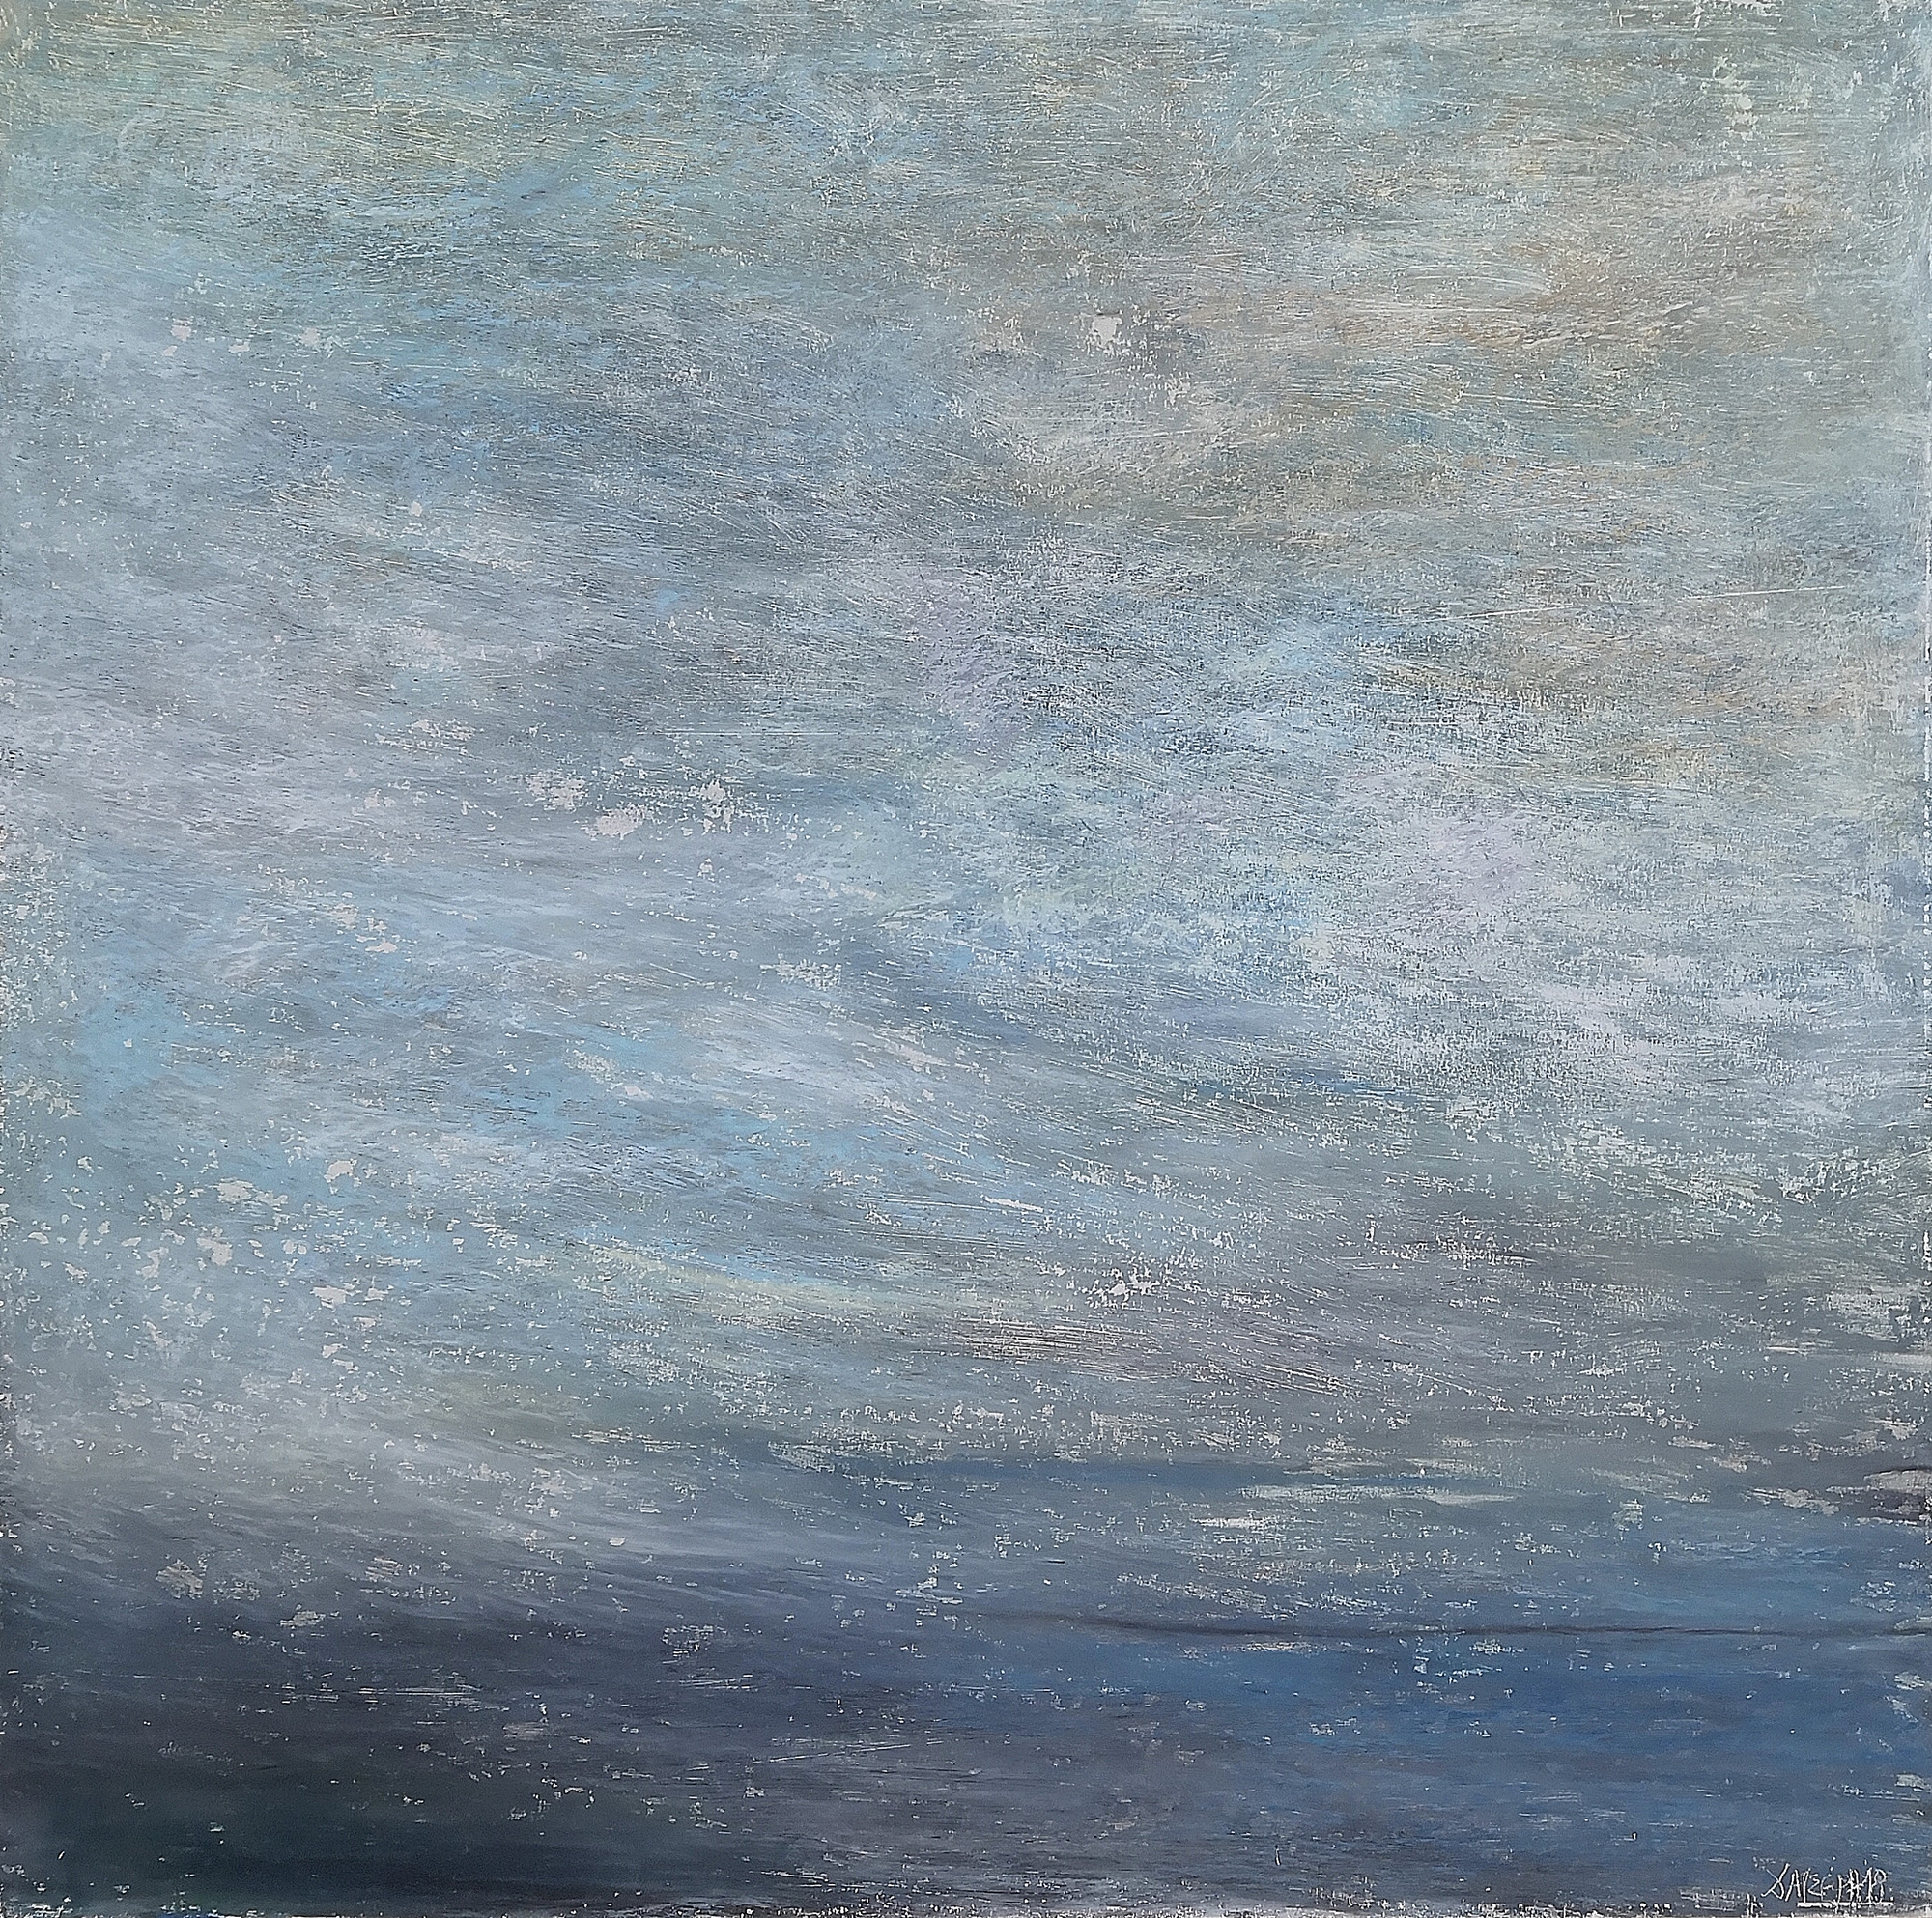 35.Landscape, 70x70cm, oil pastel on paper, 2019